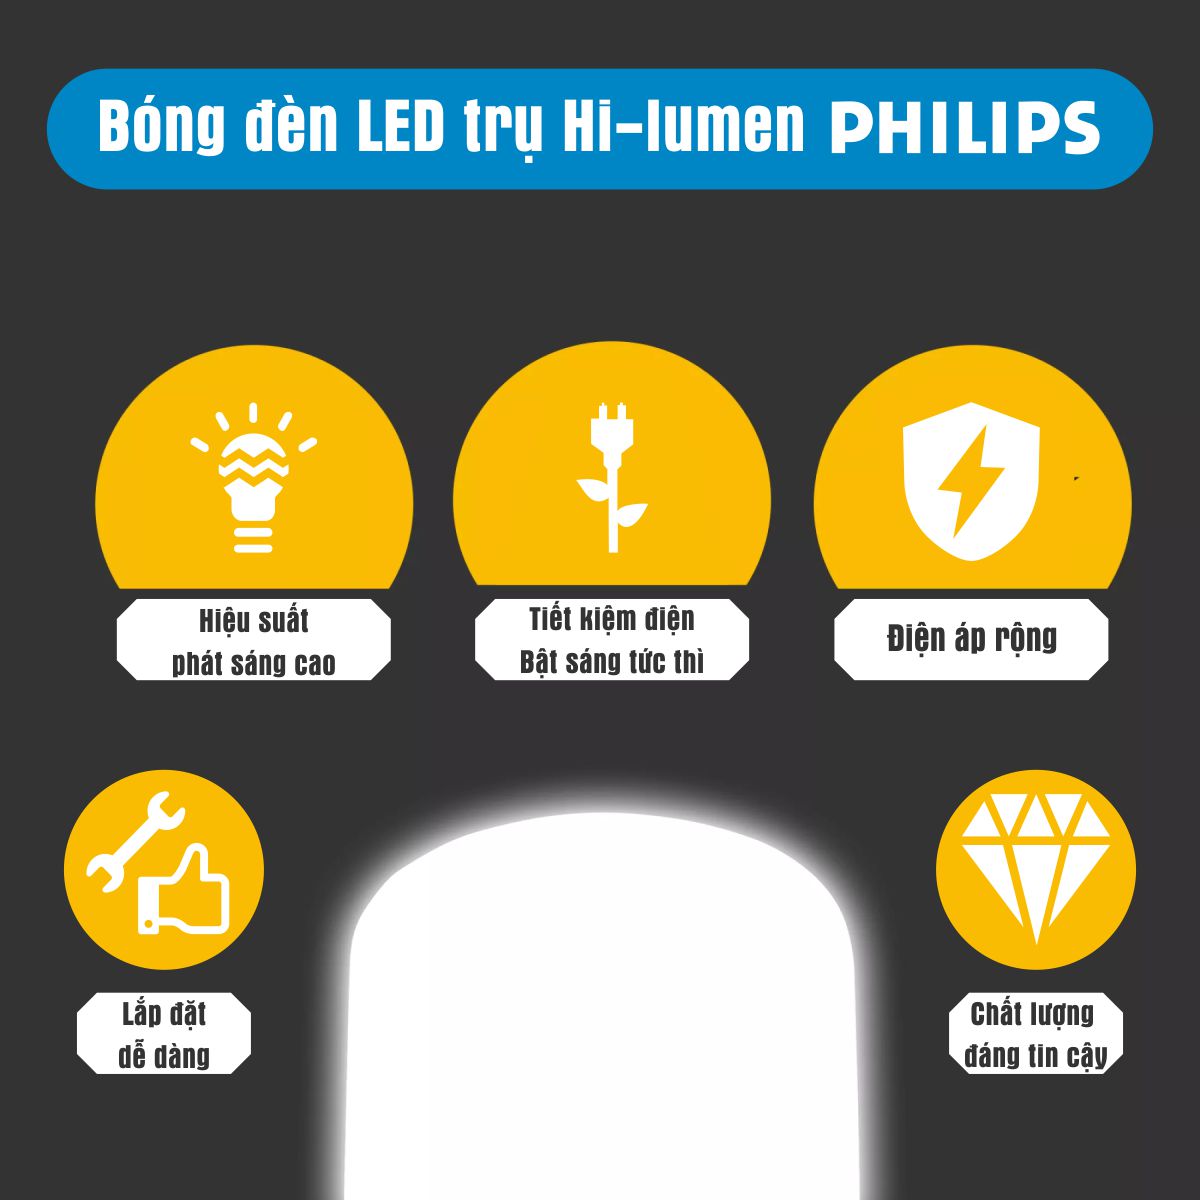 Bóng đèn LED trụ Hi-lumen G3 PHILIPS E27 - Độ sáng cao, tiết kiệm điện, chất lượng ánh sáng vượt trội - Hàng Chính Hãng 